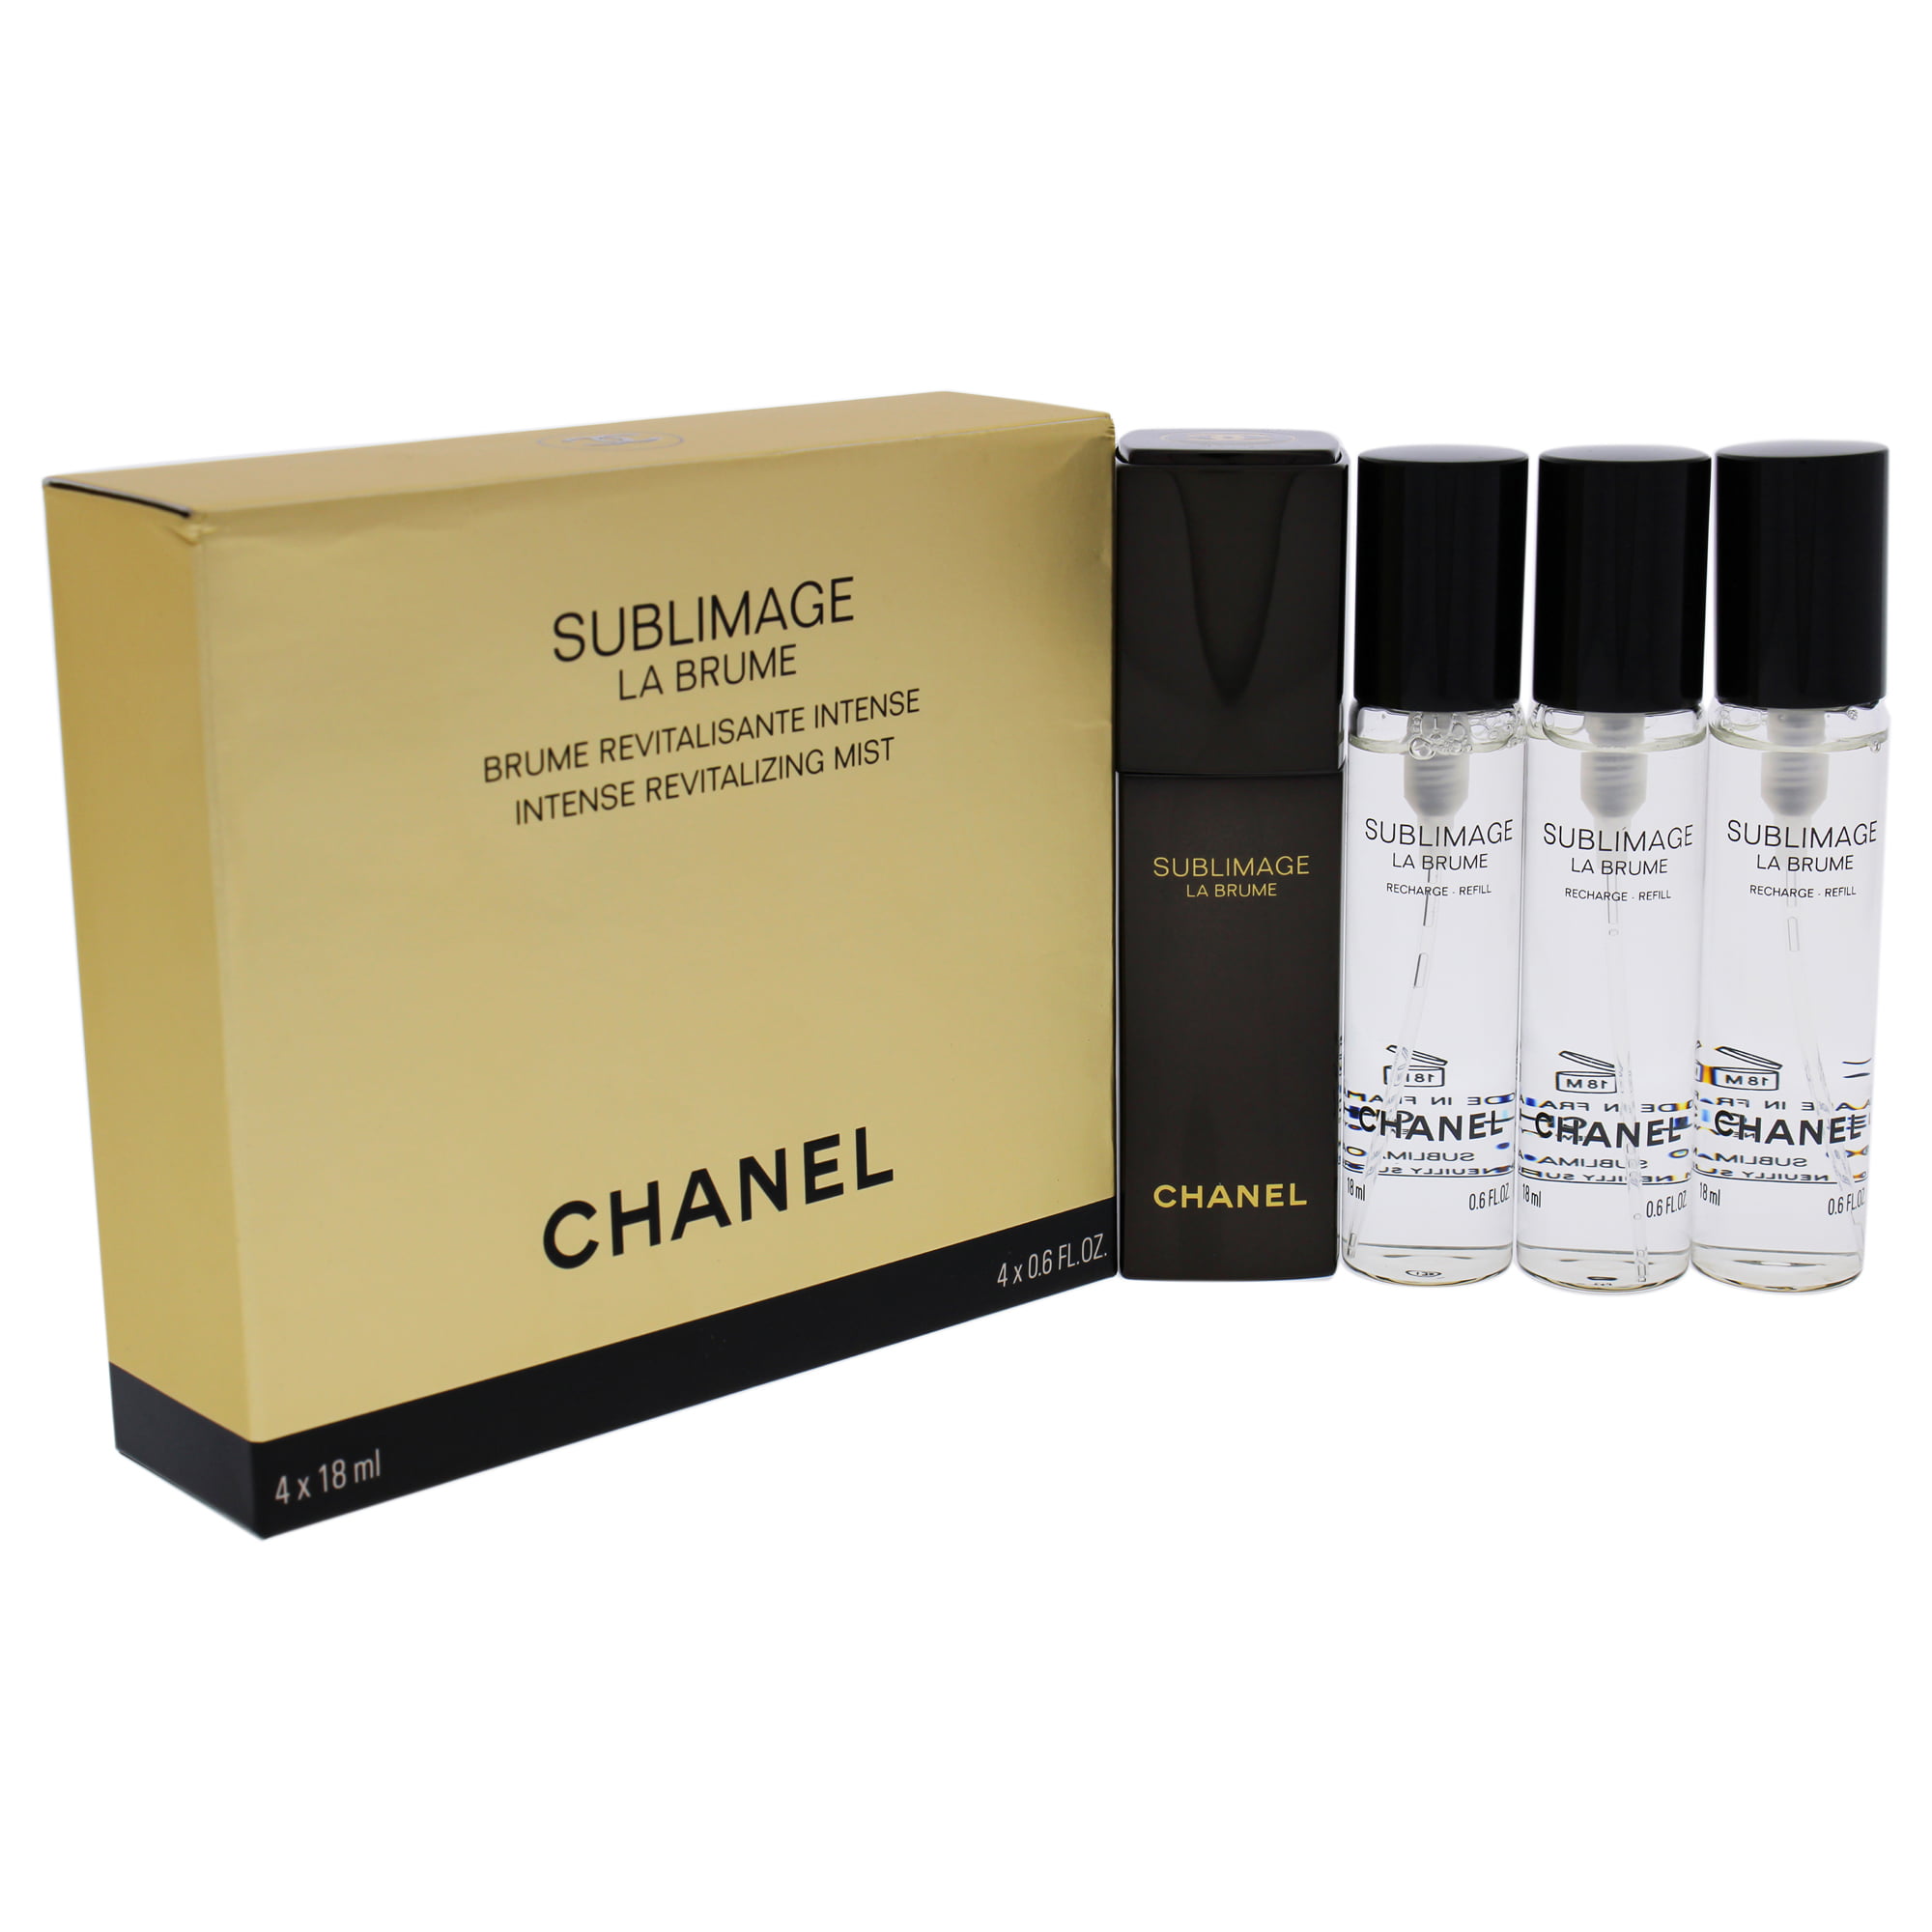 Review: Chanel Sublimage La Brume Intense Revitalizing Mist- My